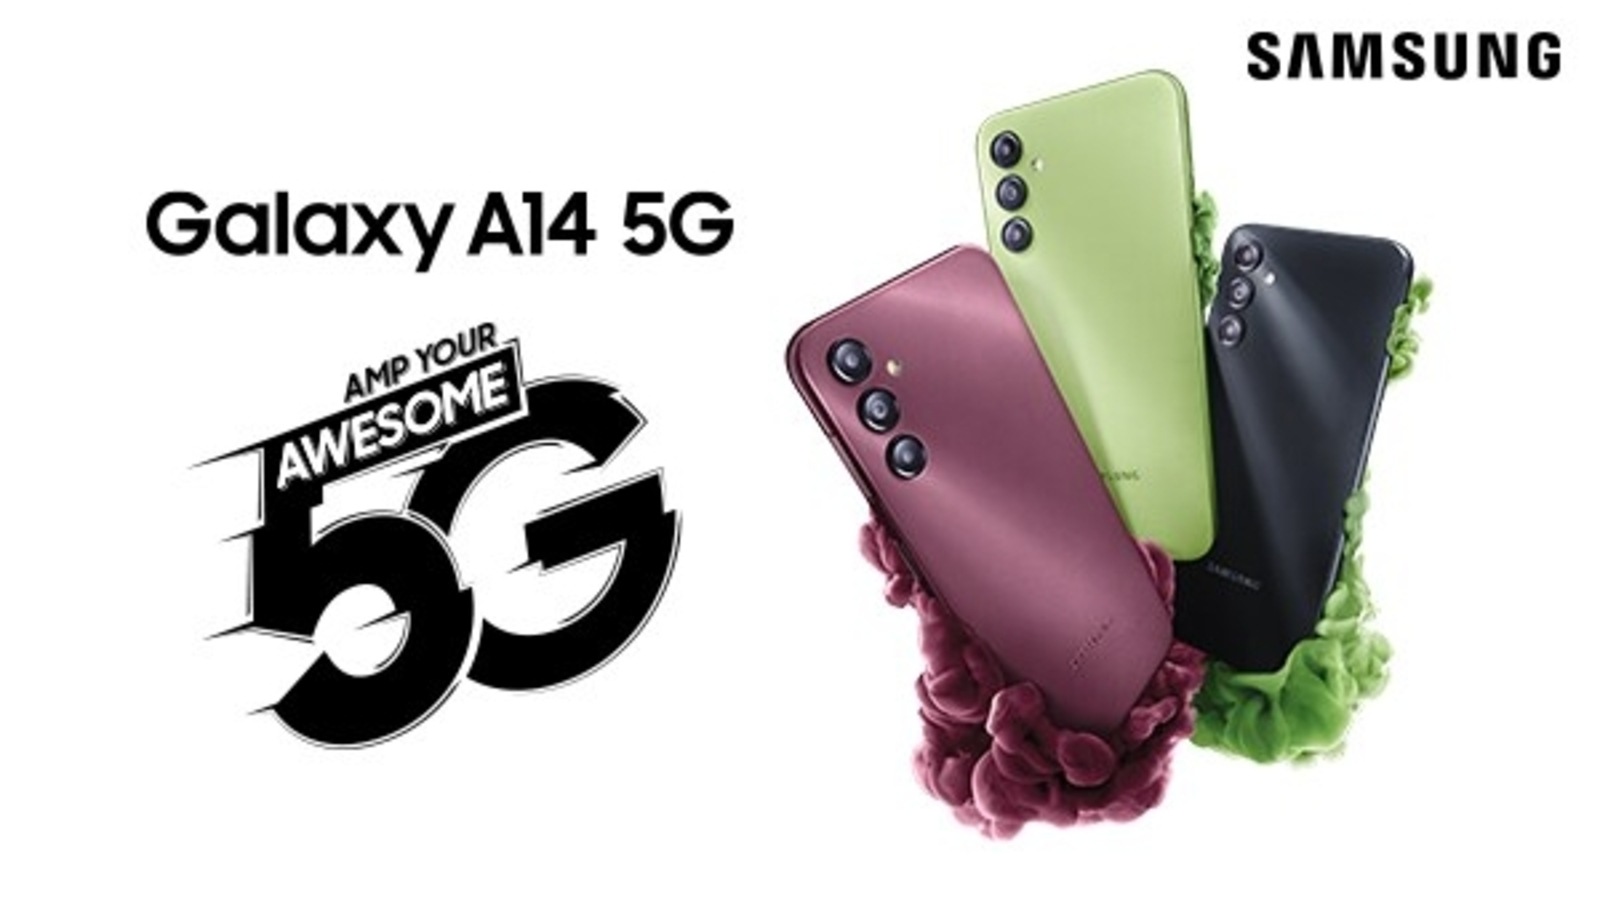 Samsung Galaxy A14 5G, Galaxy A23 5G affordable 5G smartphones go